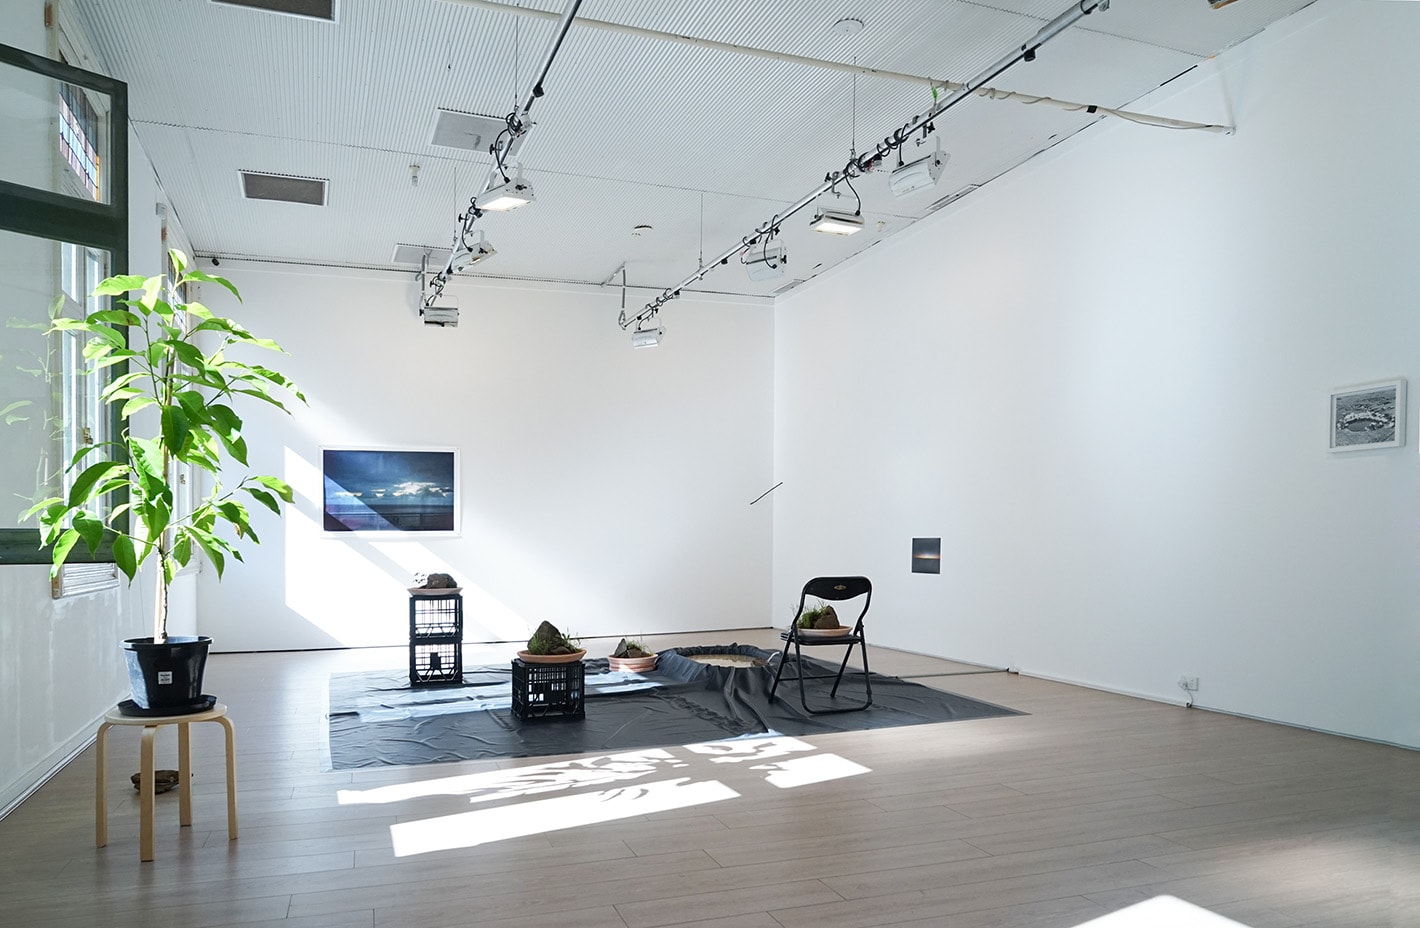 楊沛鏗於澳洲悉尼4A當代亞洲藝術中心的雙個展“海珠白雲”